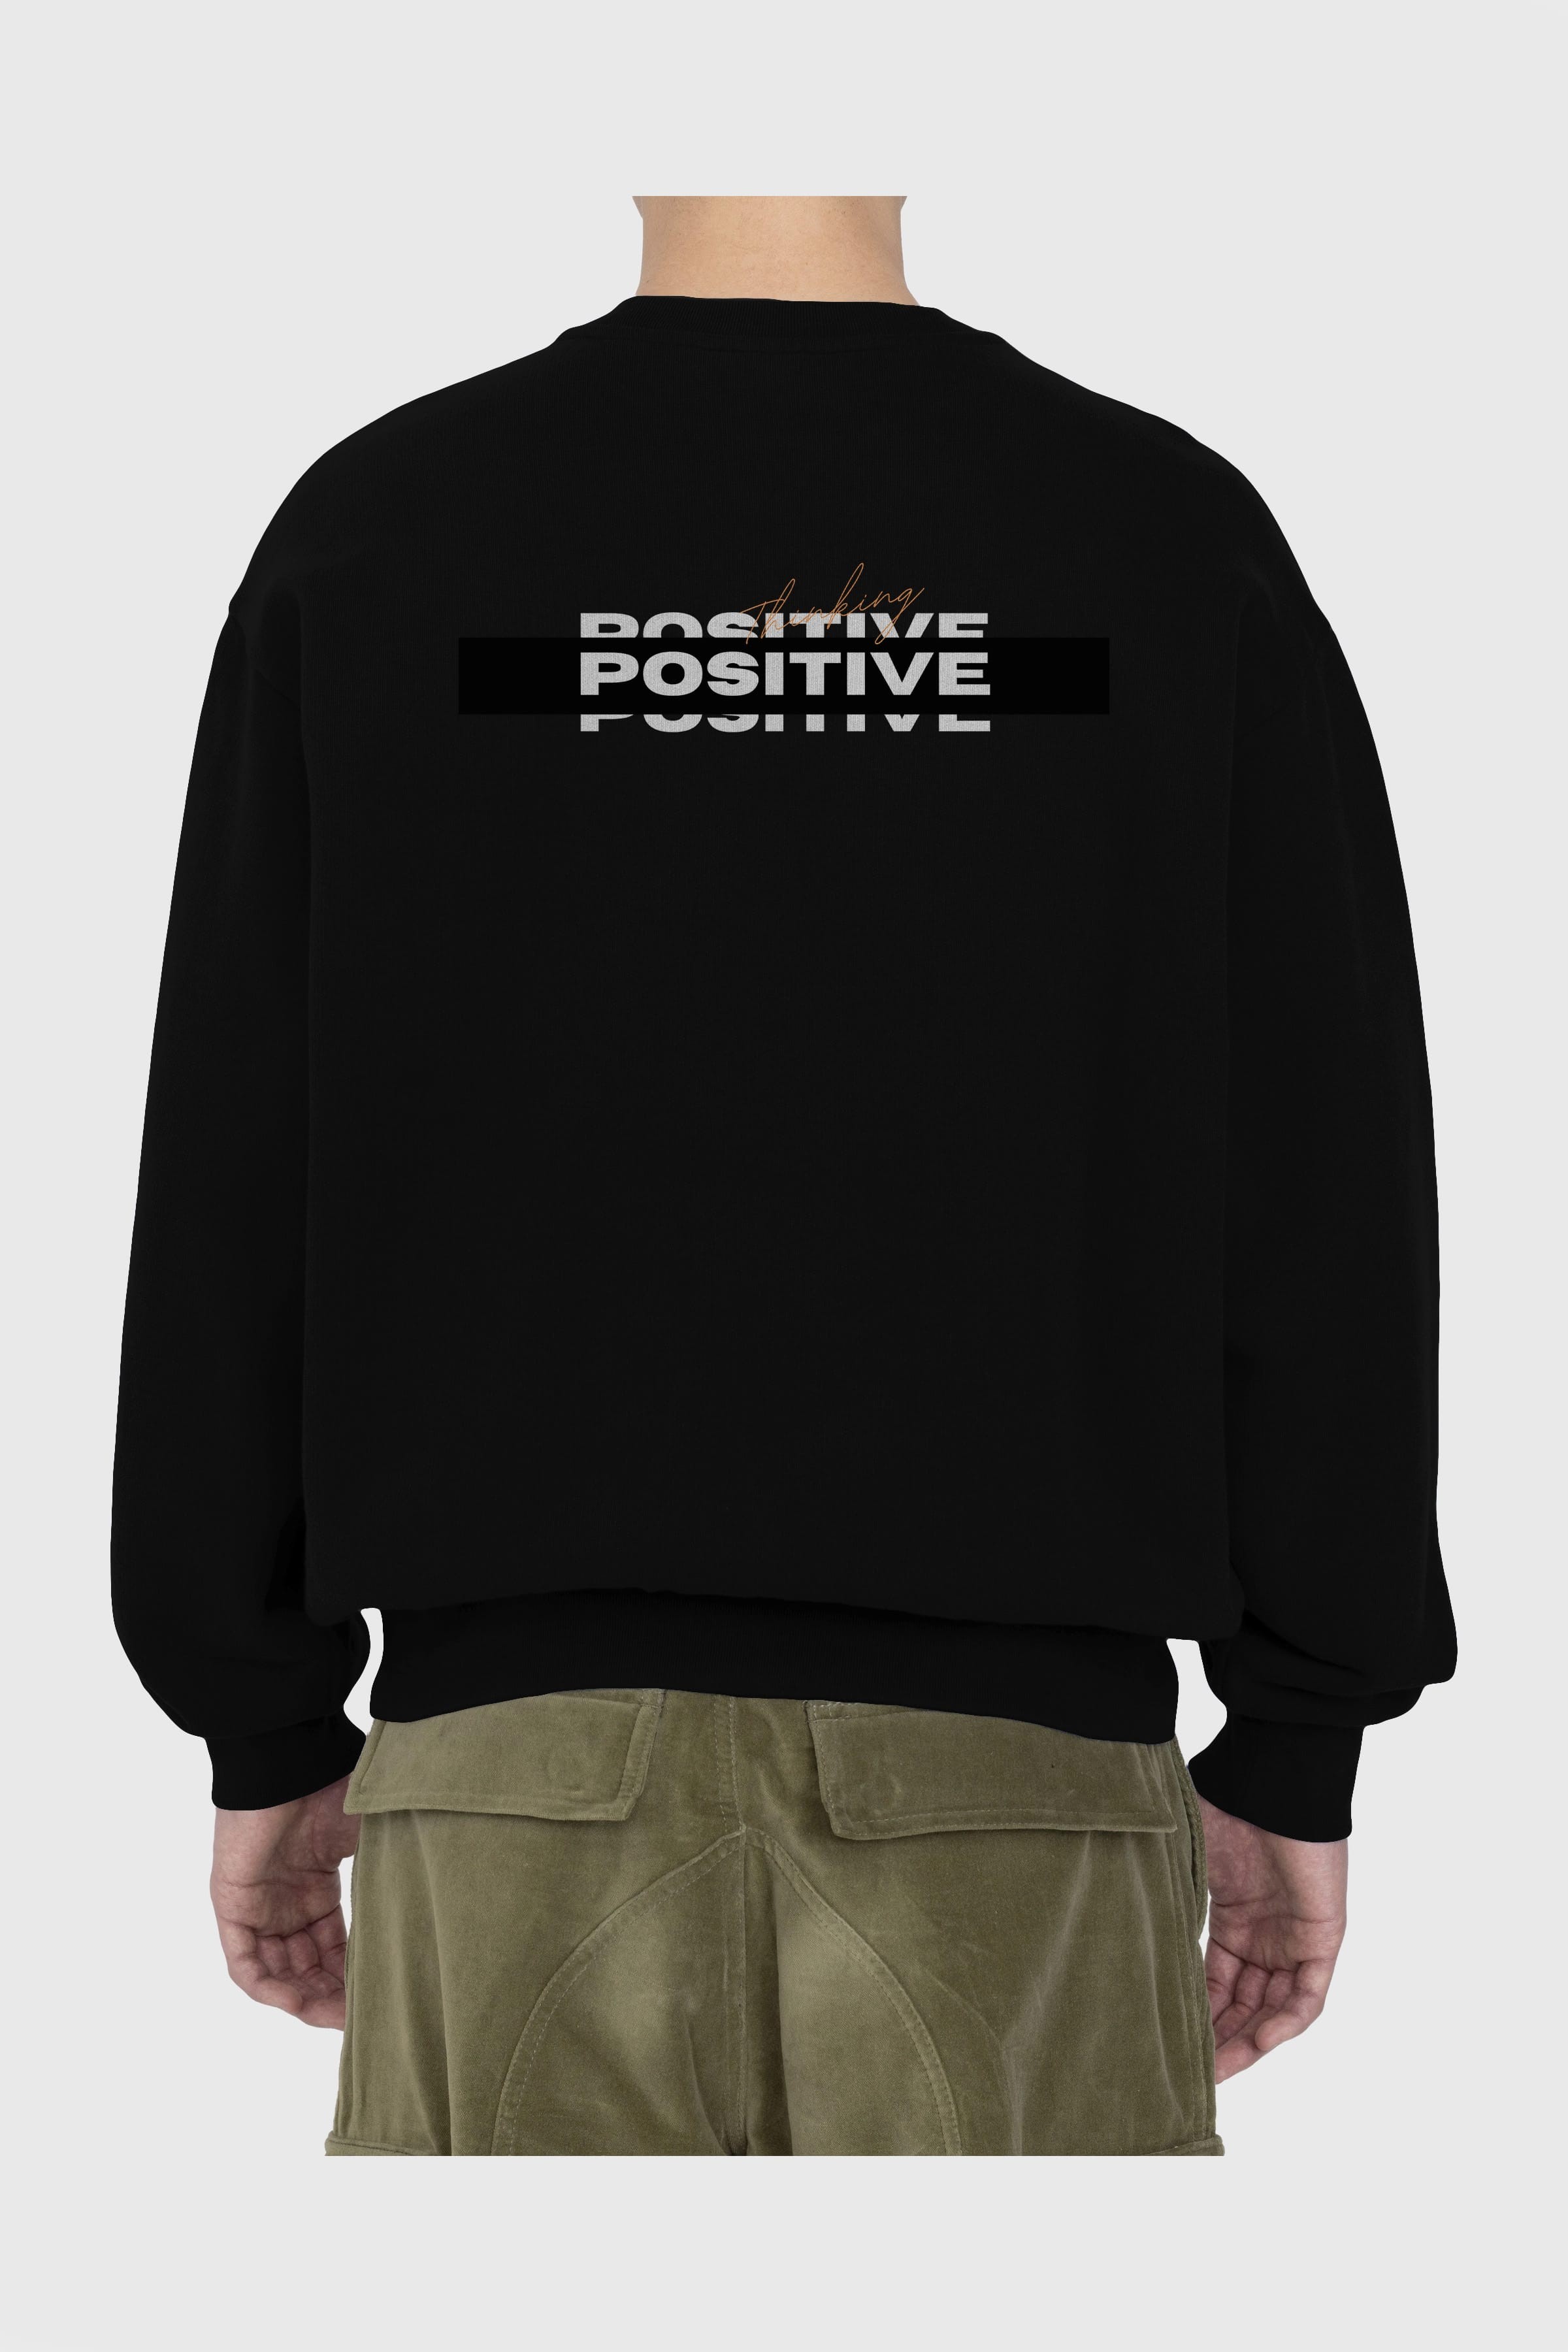 Positive Thinking Arka Baskılı Oversize Sweatshirt Erkek Kadın Unisex